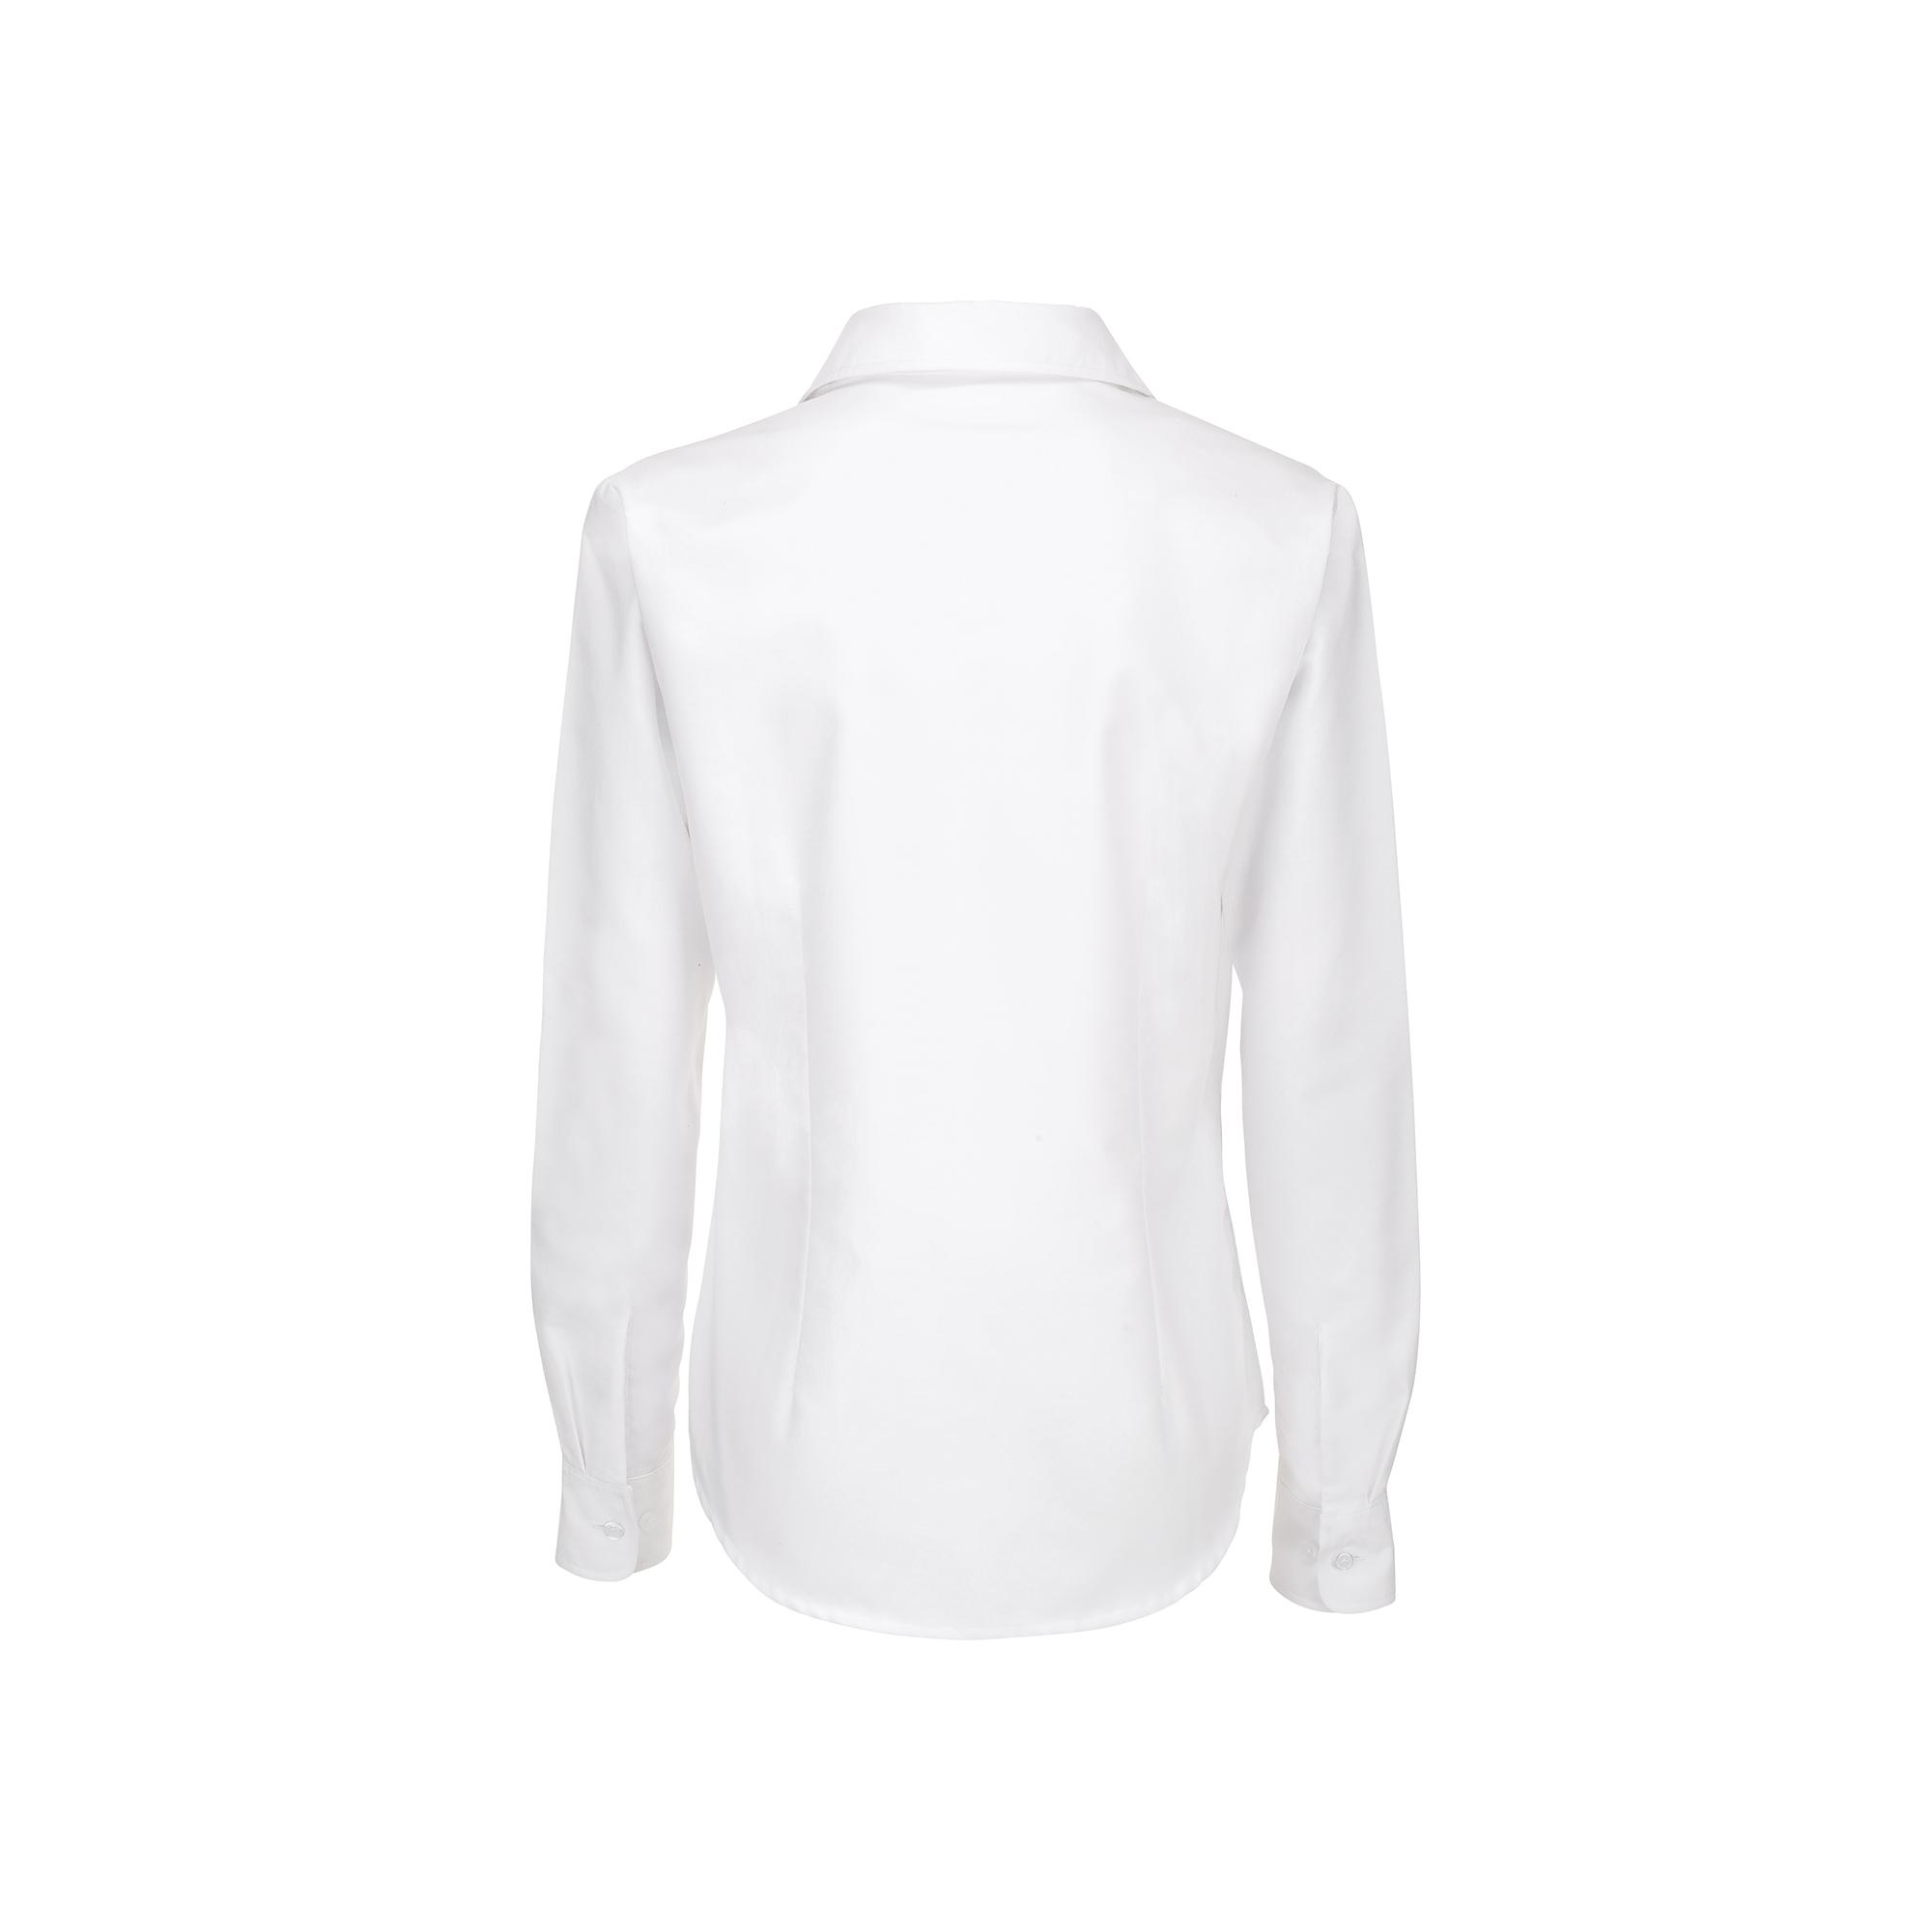 Рубашка женская с длинным рукавом Oxford LSL/women, цвет белый, фото 2